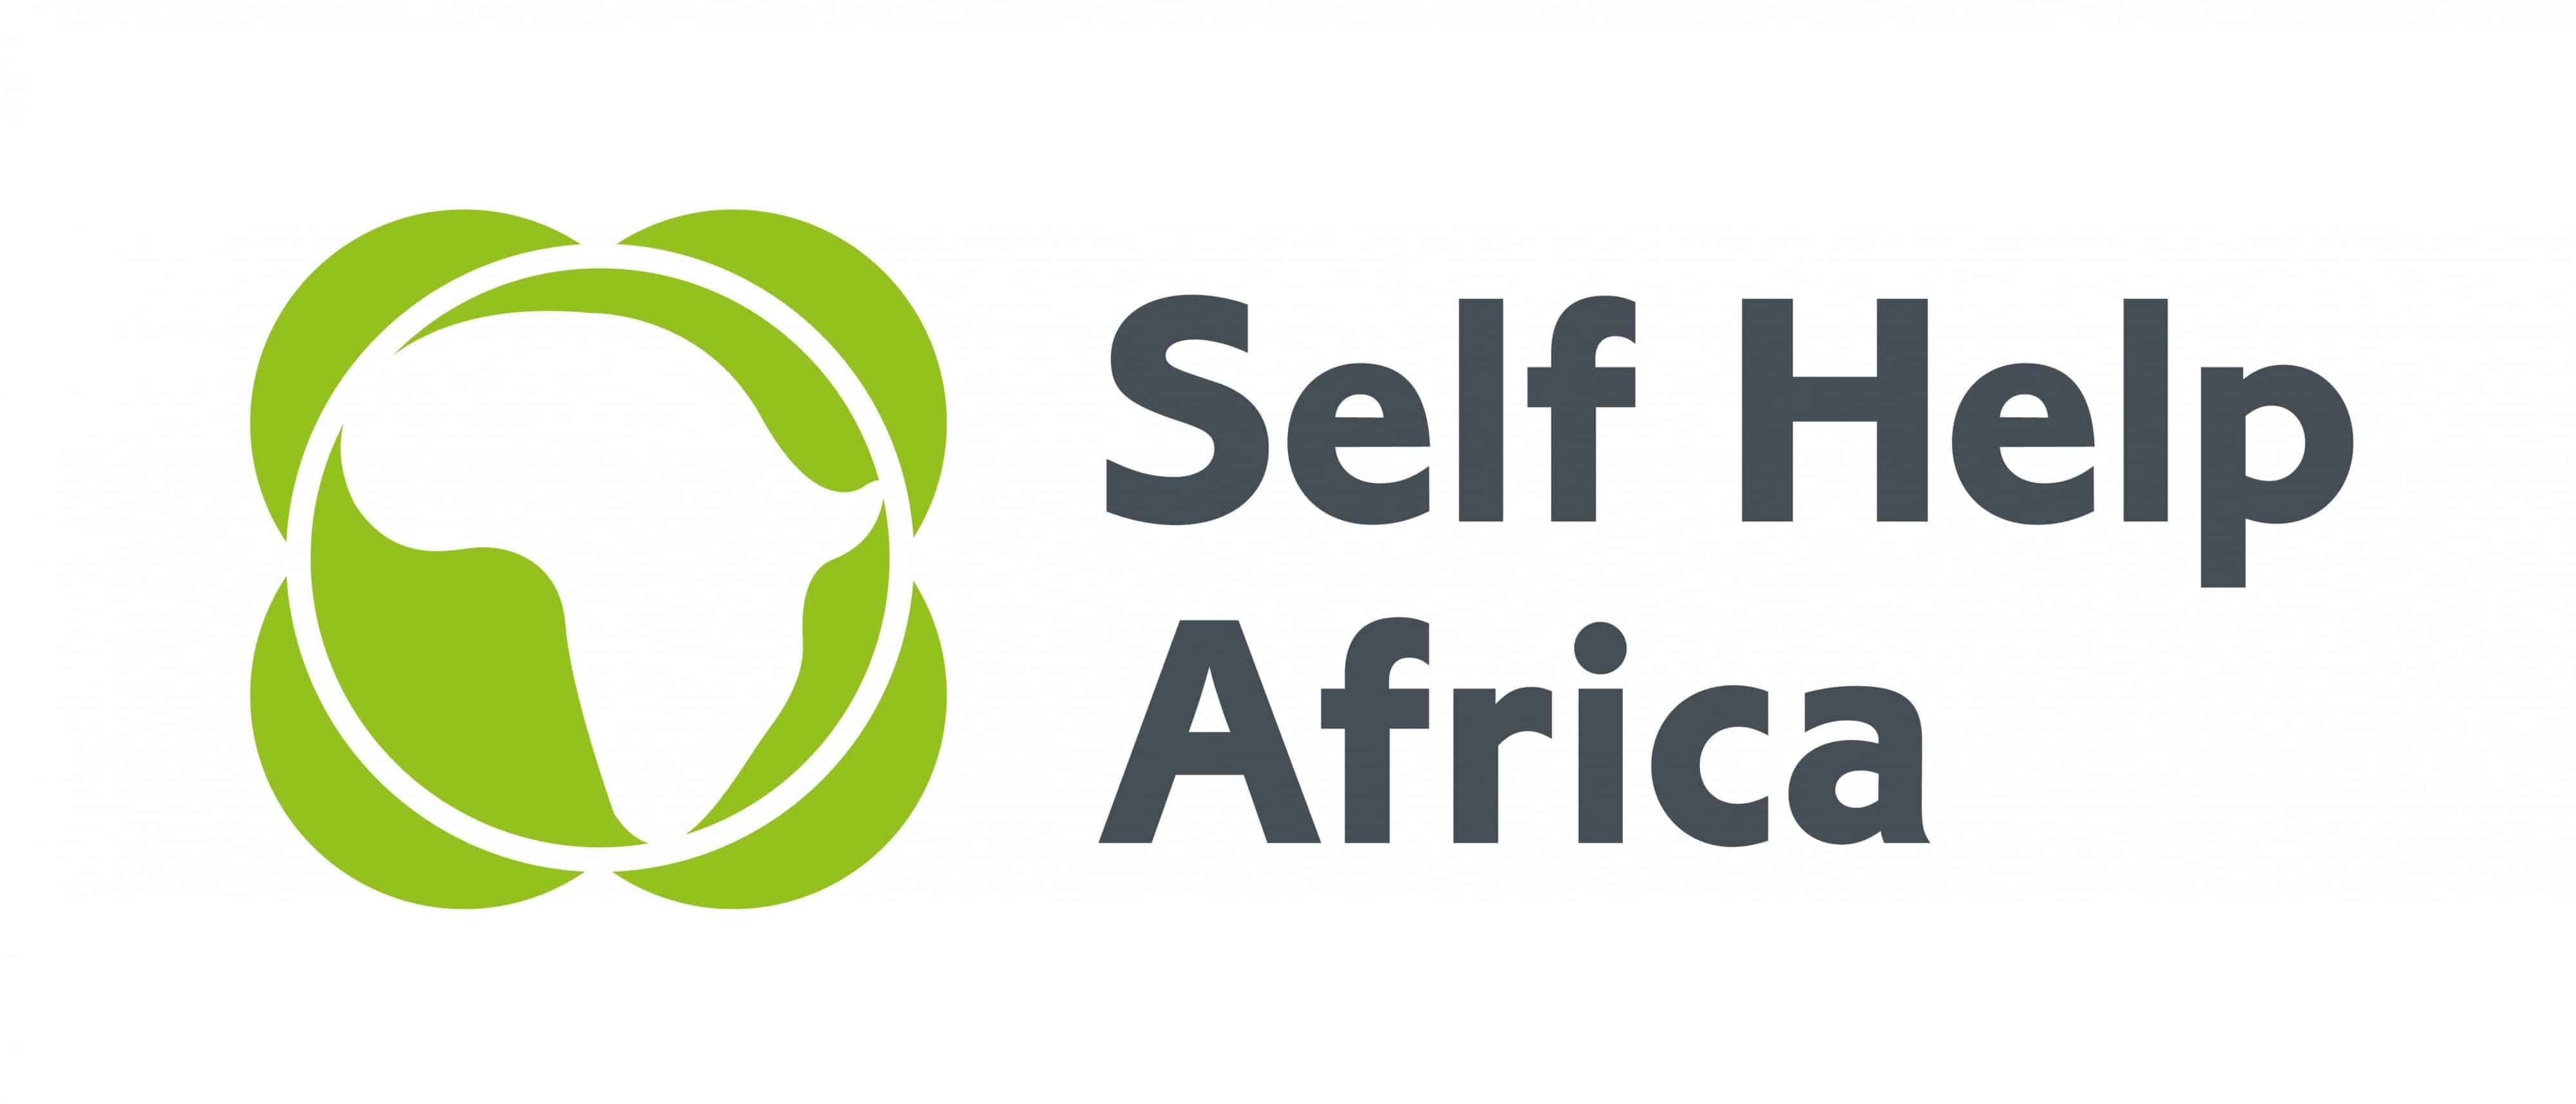 Self Help Africa scaled | Home